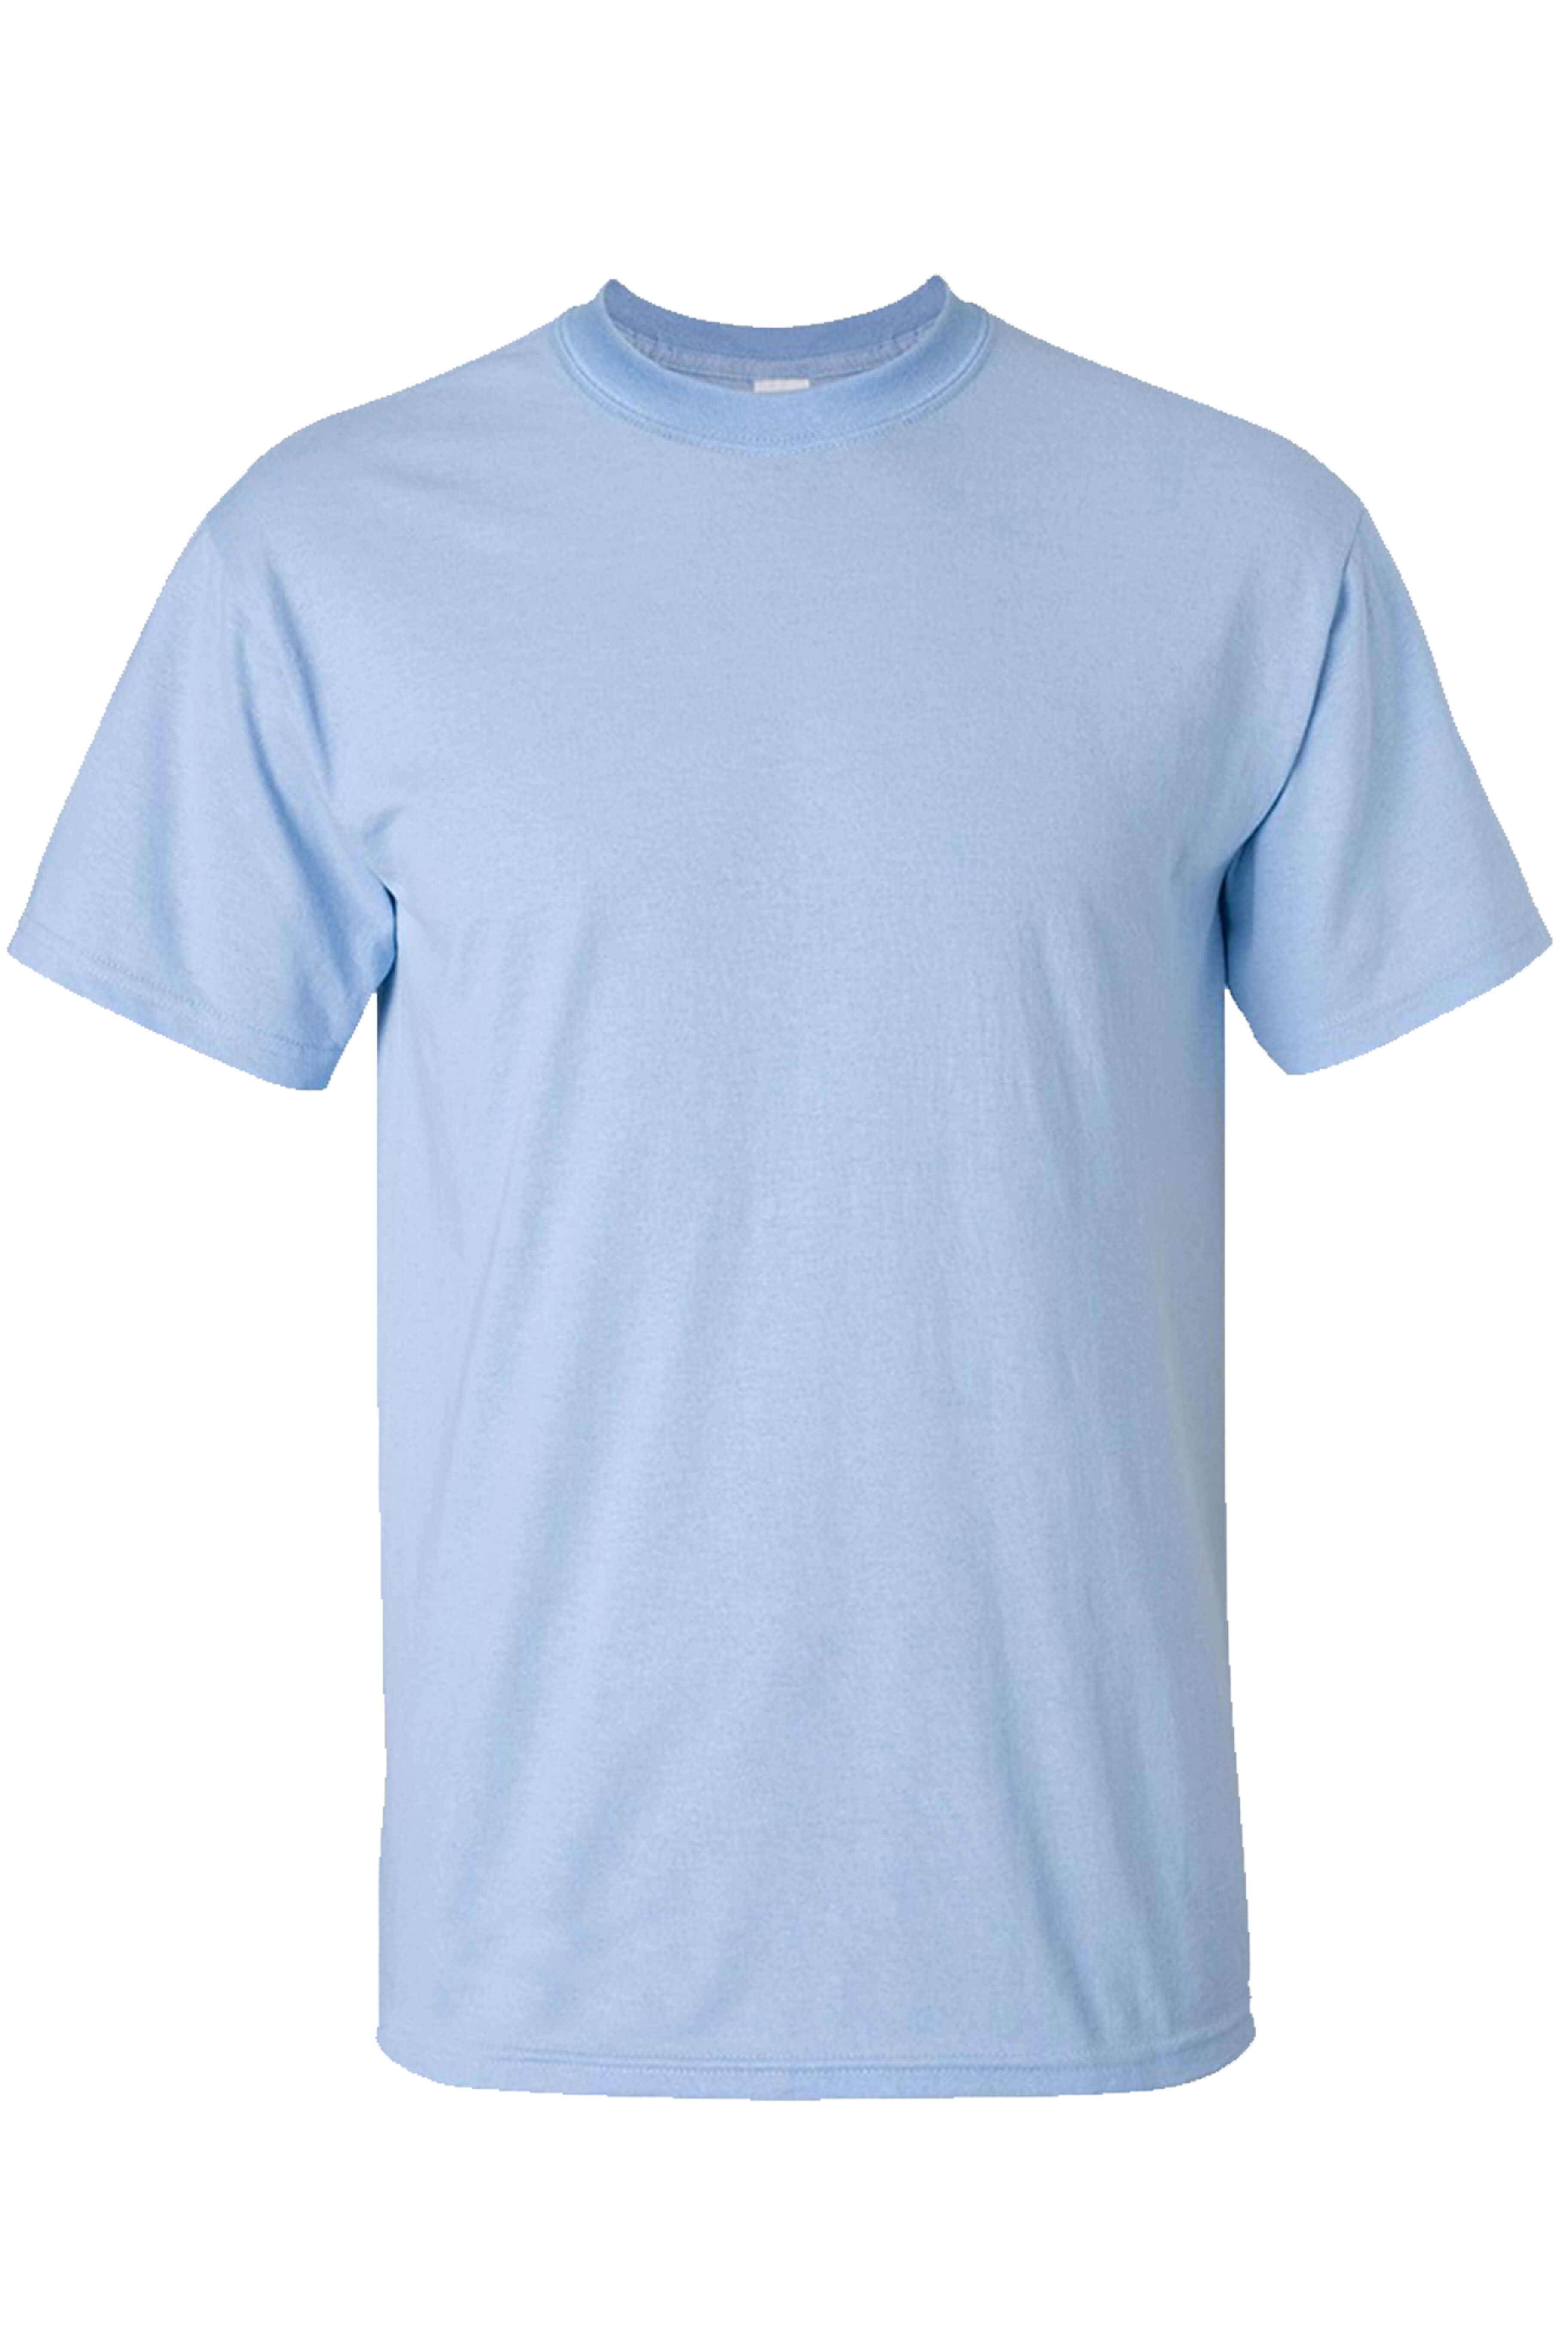 Light Blue T-Shirt - I Love Fancy Dress